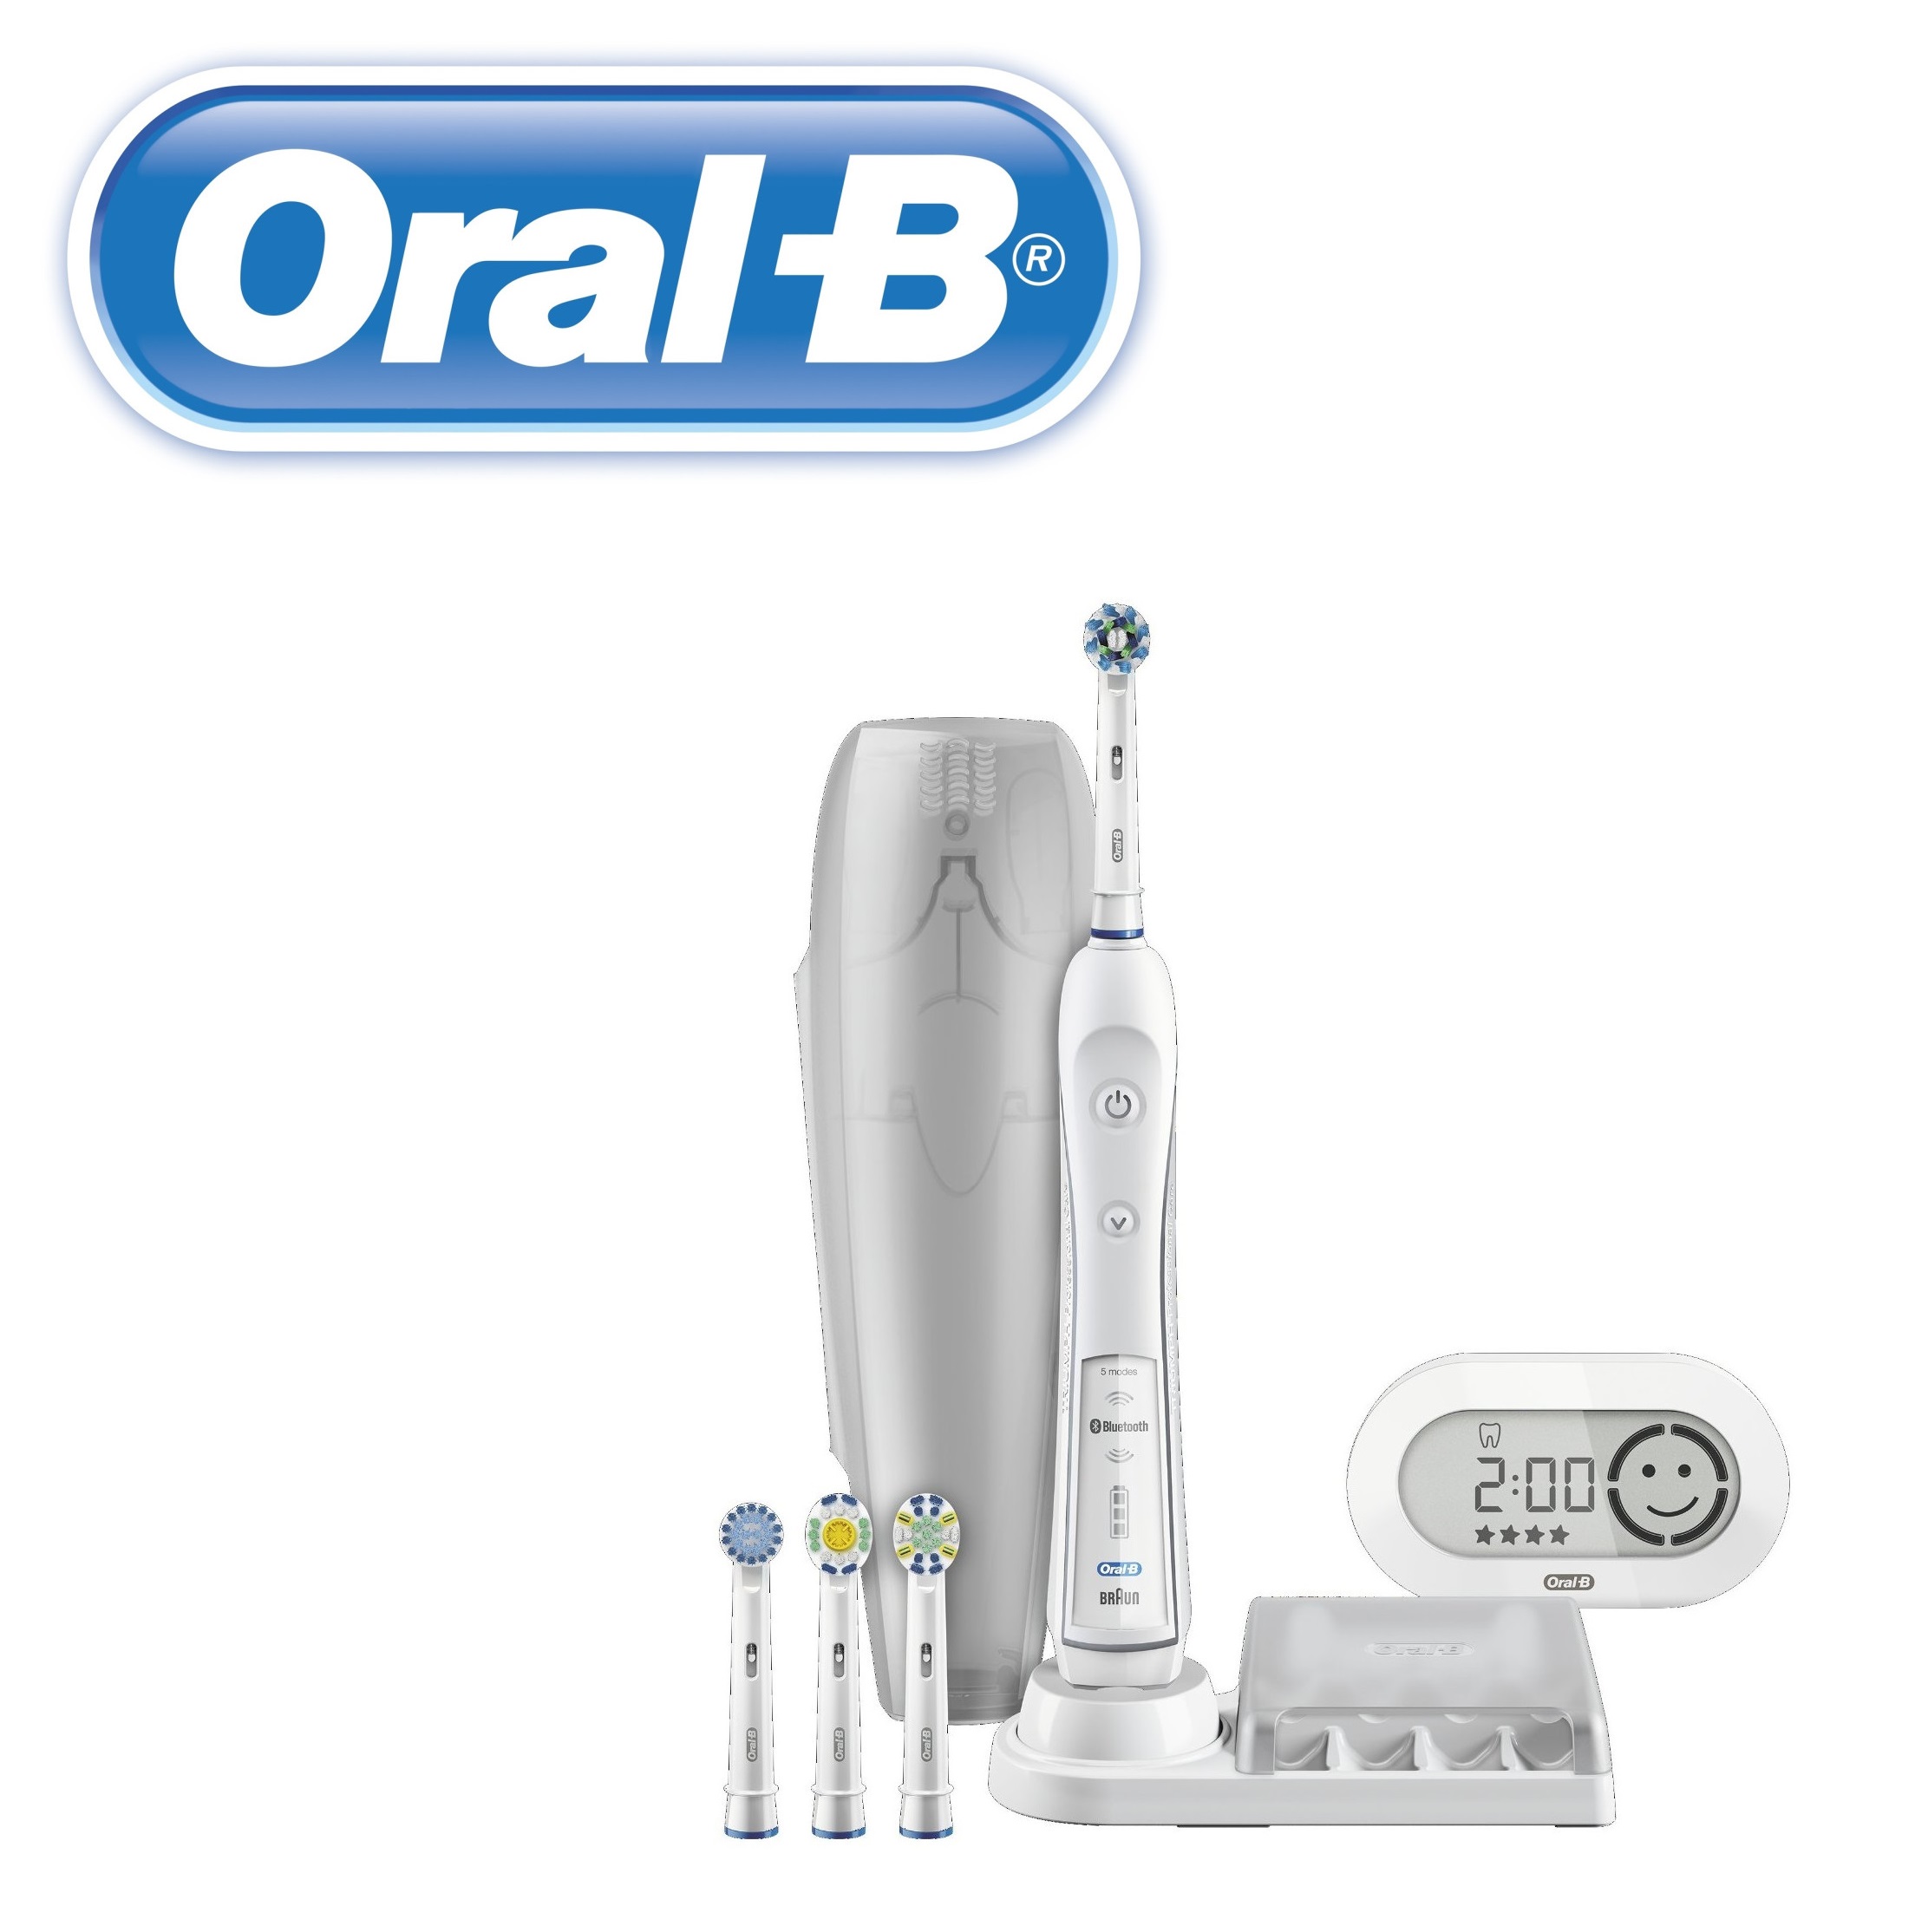 oral-b-6000-79-99-25